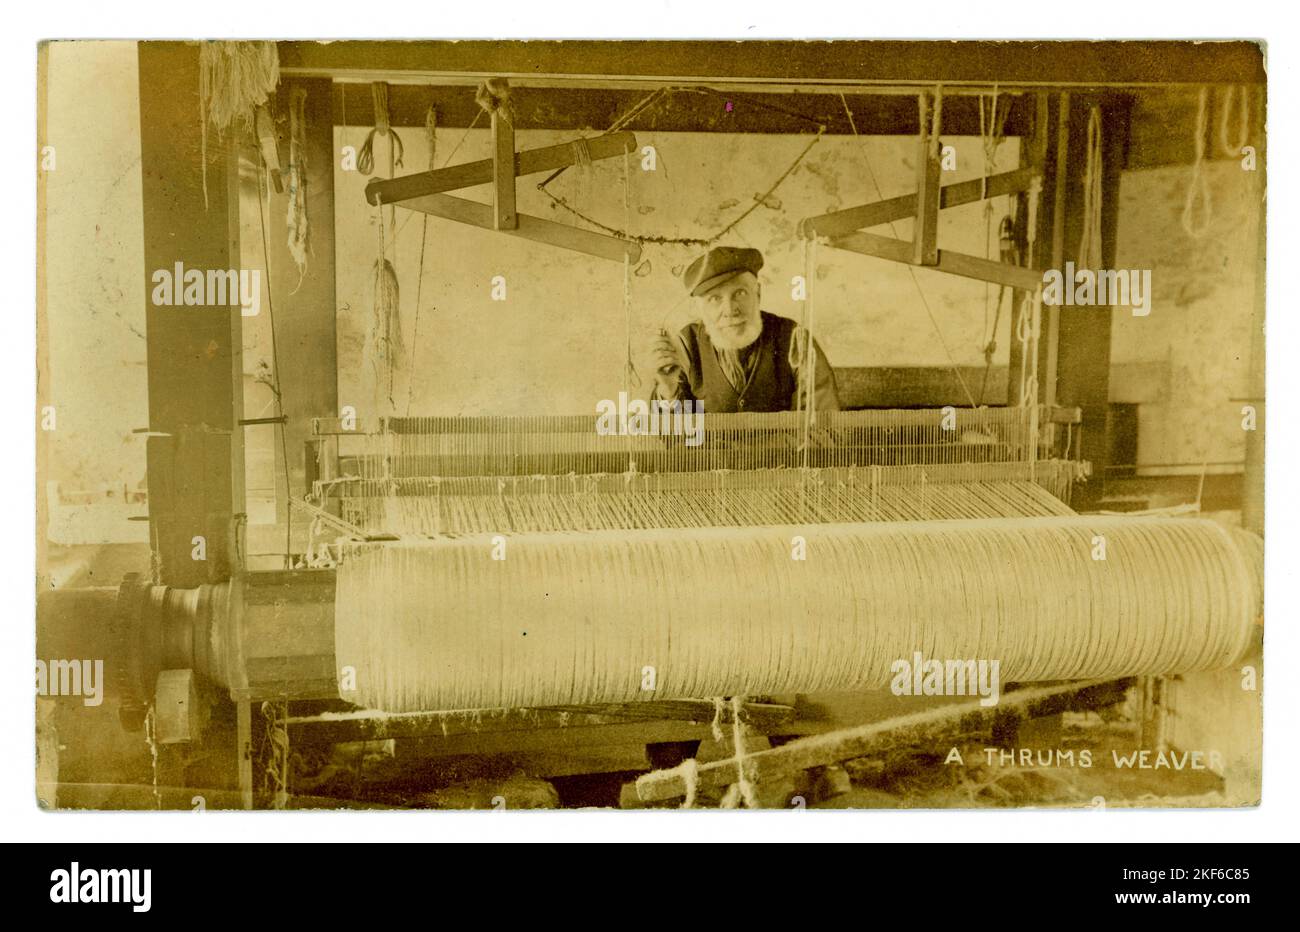 Originale edwardianische Postkarte eines älteren Schotten, der ein Thrums Weaver ist - wahrscheinlich ein Hüttenarbeiter, der von zu Hause aus an einem Holzstrauß arbeitet, Handloommaschine, vielleicht Rugmaking. Schübe sind Abfälle aus der Teppichweberei, sie waren billig, also wird dieser Mann wahrscheinlich arm sein. Die Postkarte ist datiert/am 5. Februar 1907 aus Kirriemuir, Angus, Schottland, Stockfoto